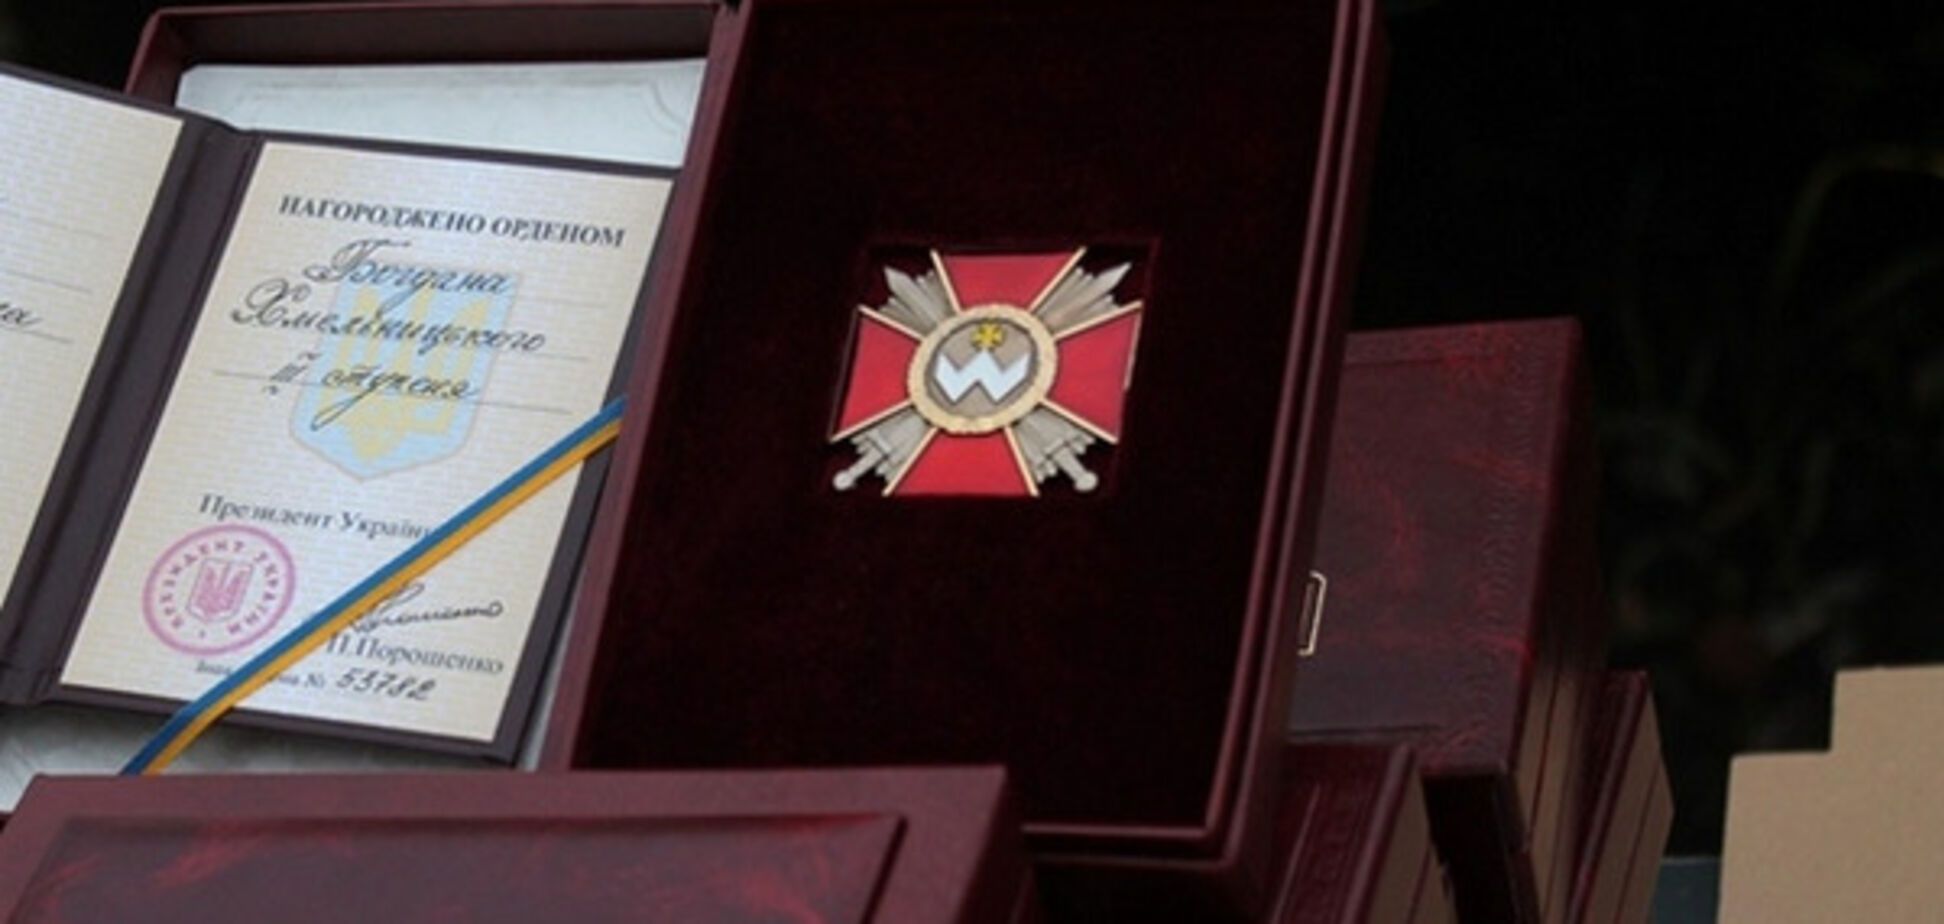 Орден Богдана Хмельницкого III степени